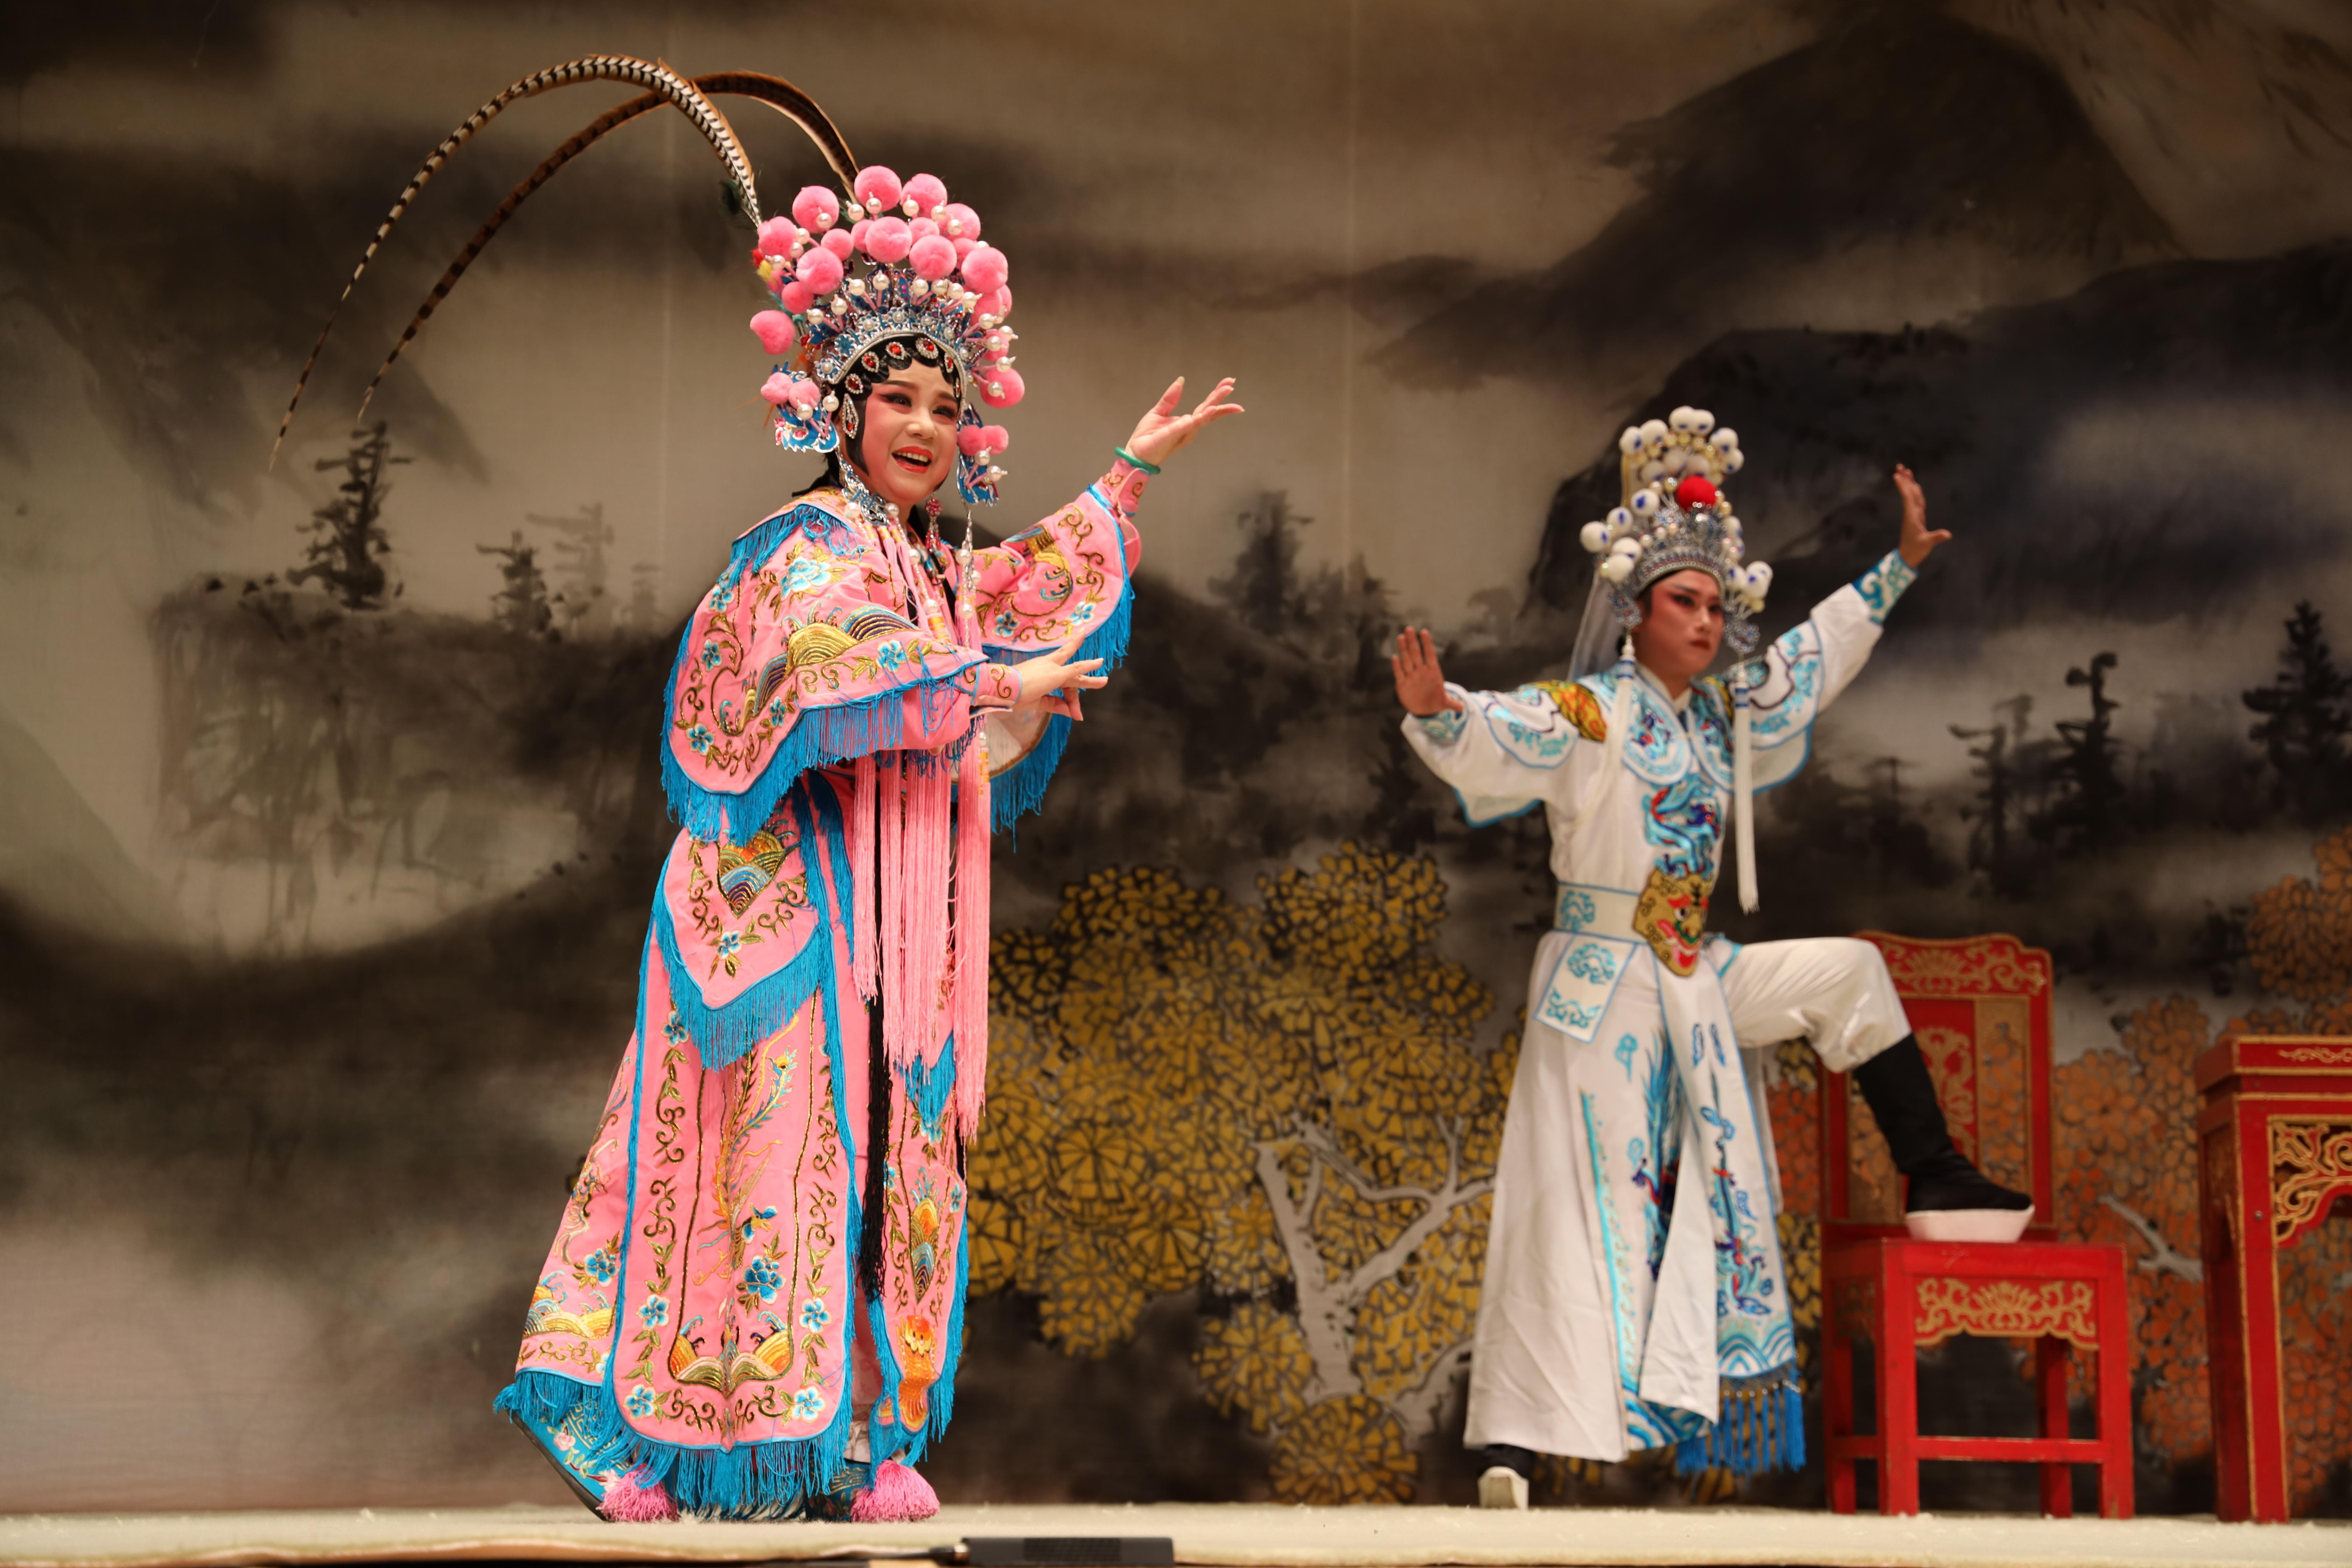 连续三晚,香港汕头文化节为香港市民奉送潮剧专场演出